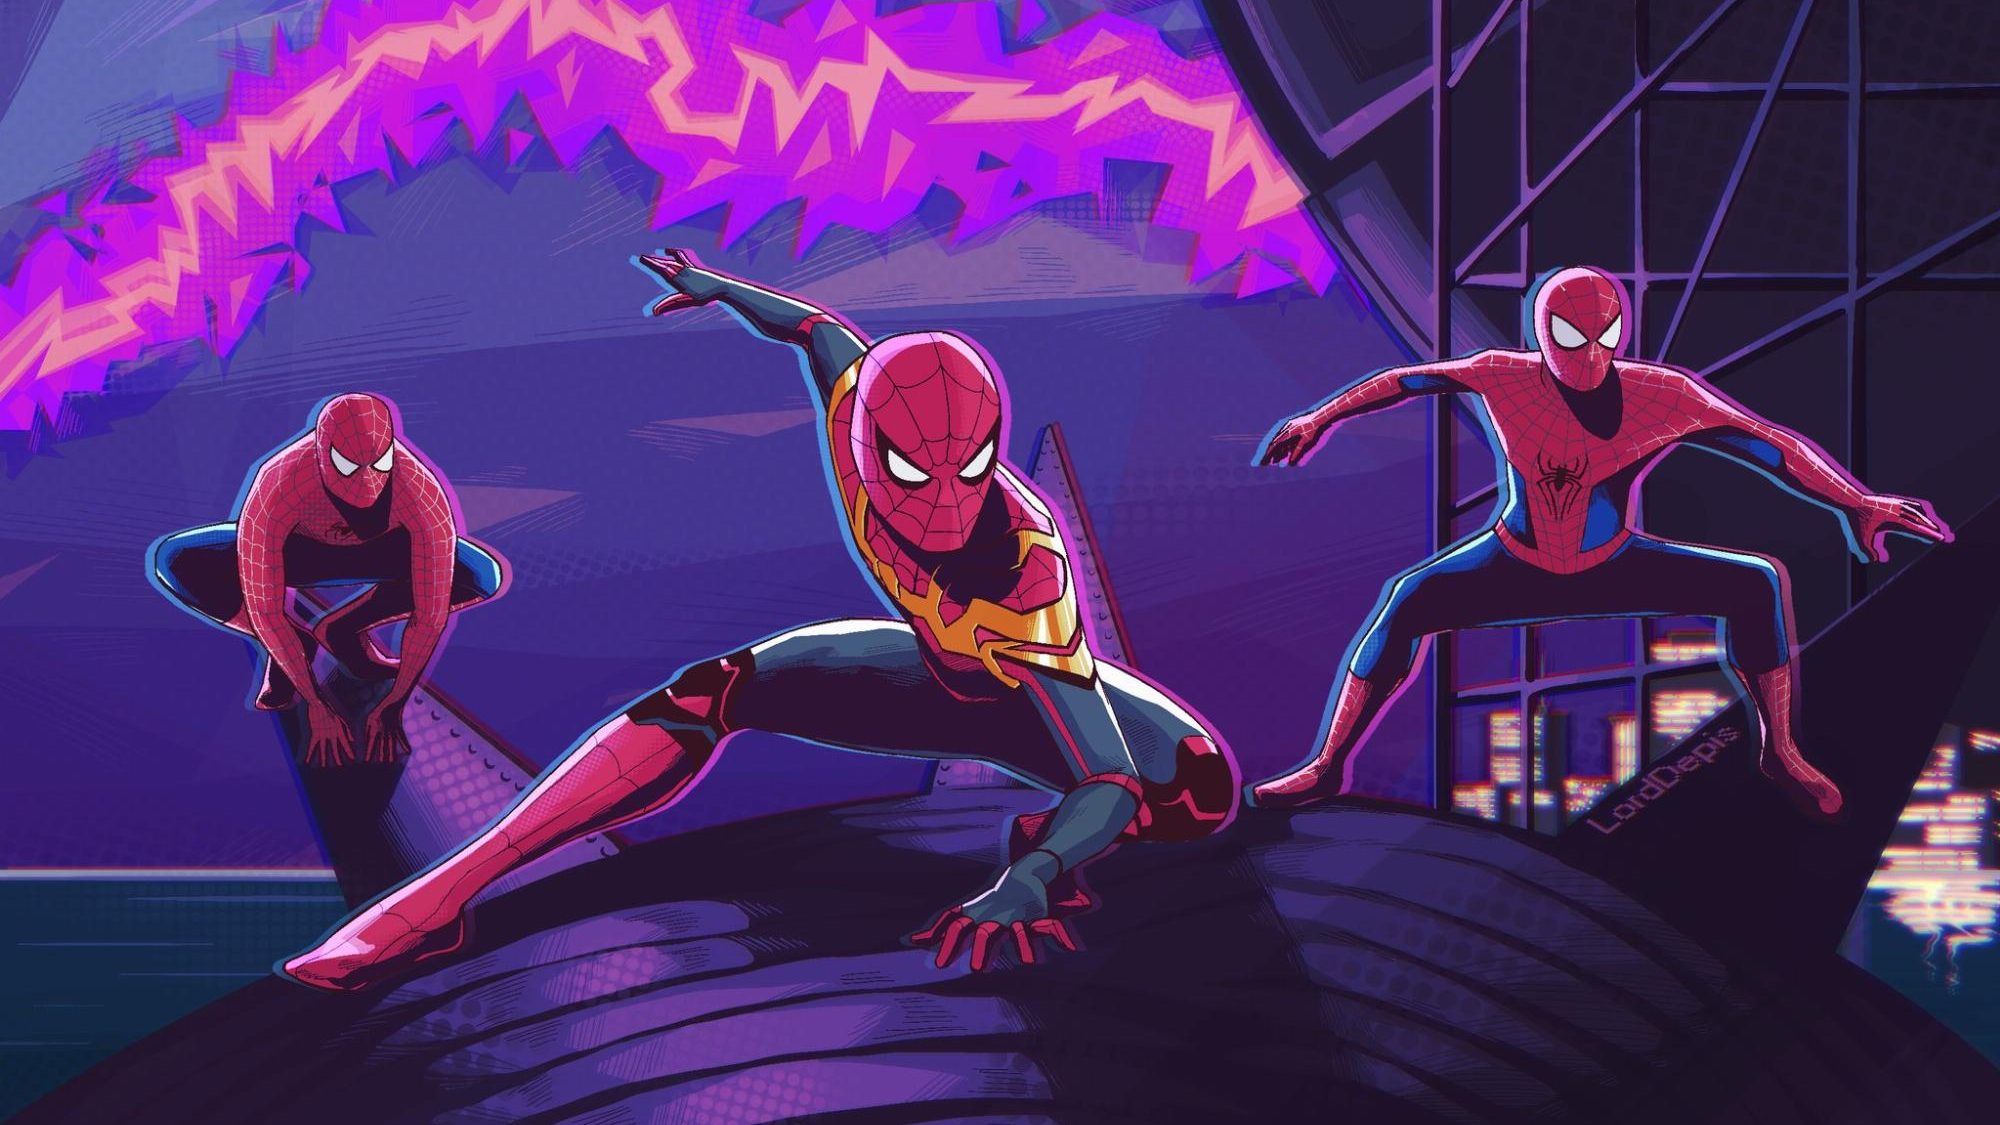 Luyện tập tin học  Cách vẽ siêu nhân người nhện Spiderman  YouTube